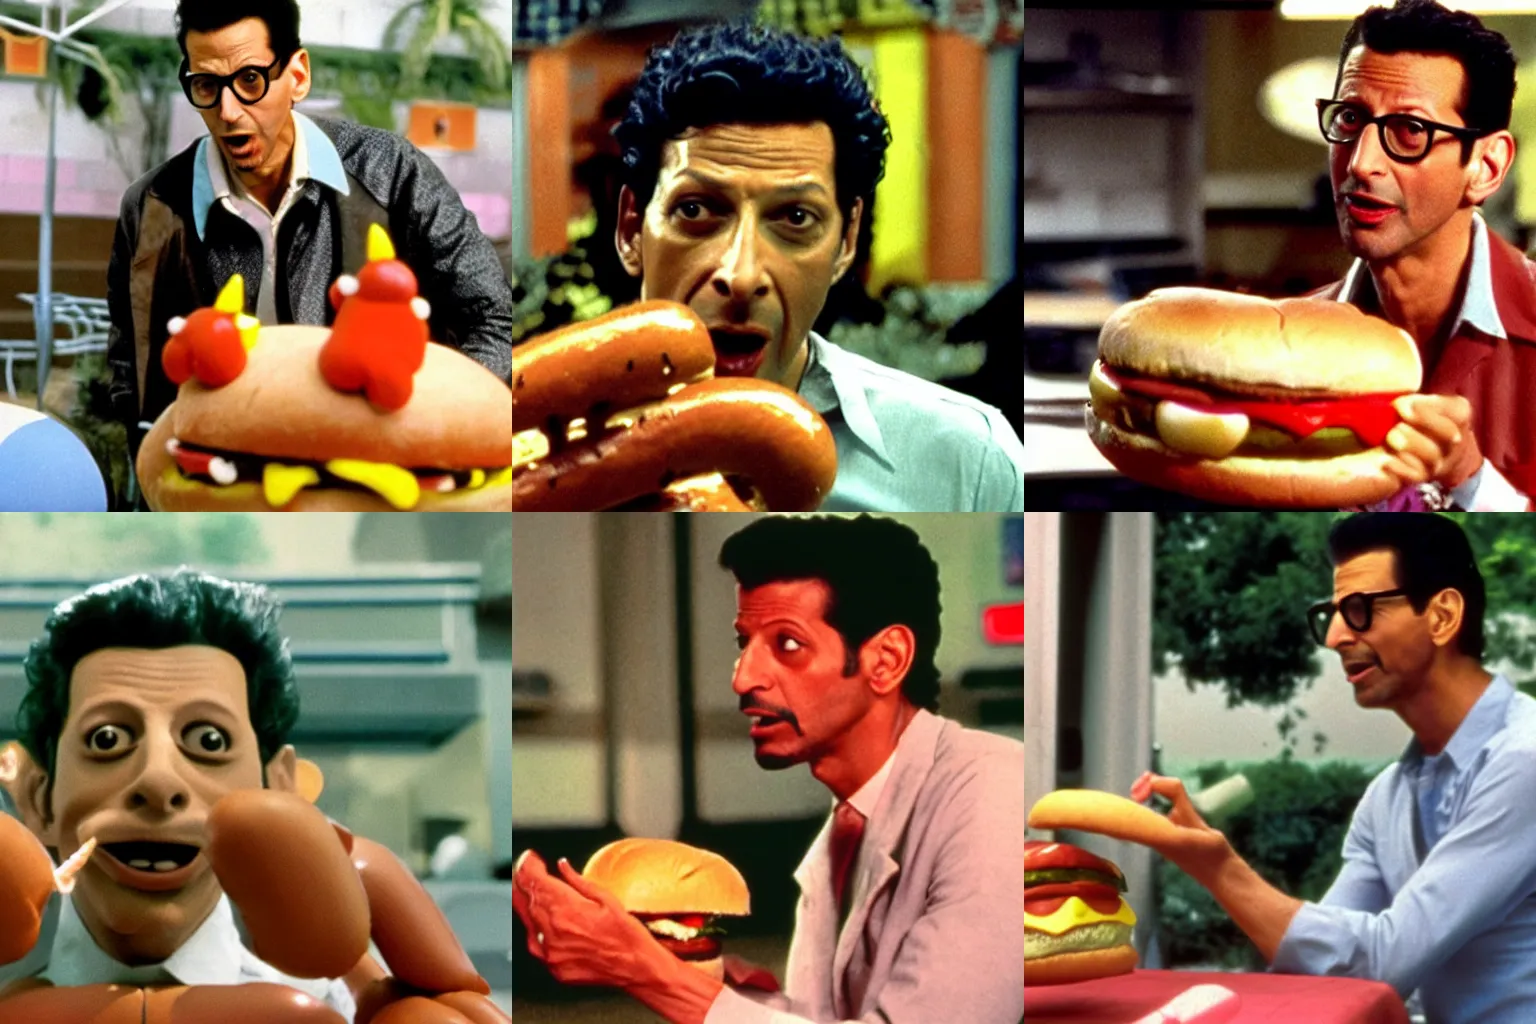 Prompt: Color movie still of Jeff Goldblum in 'Hot Dog monster vs Hamburger monster' by Akira Kurosawa